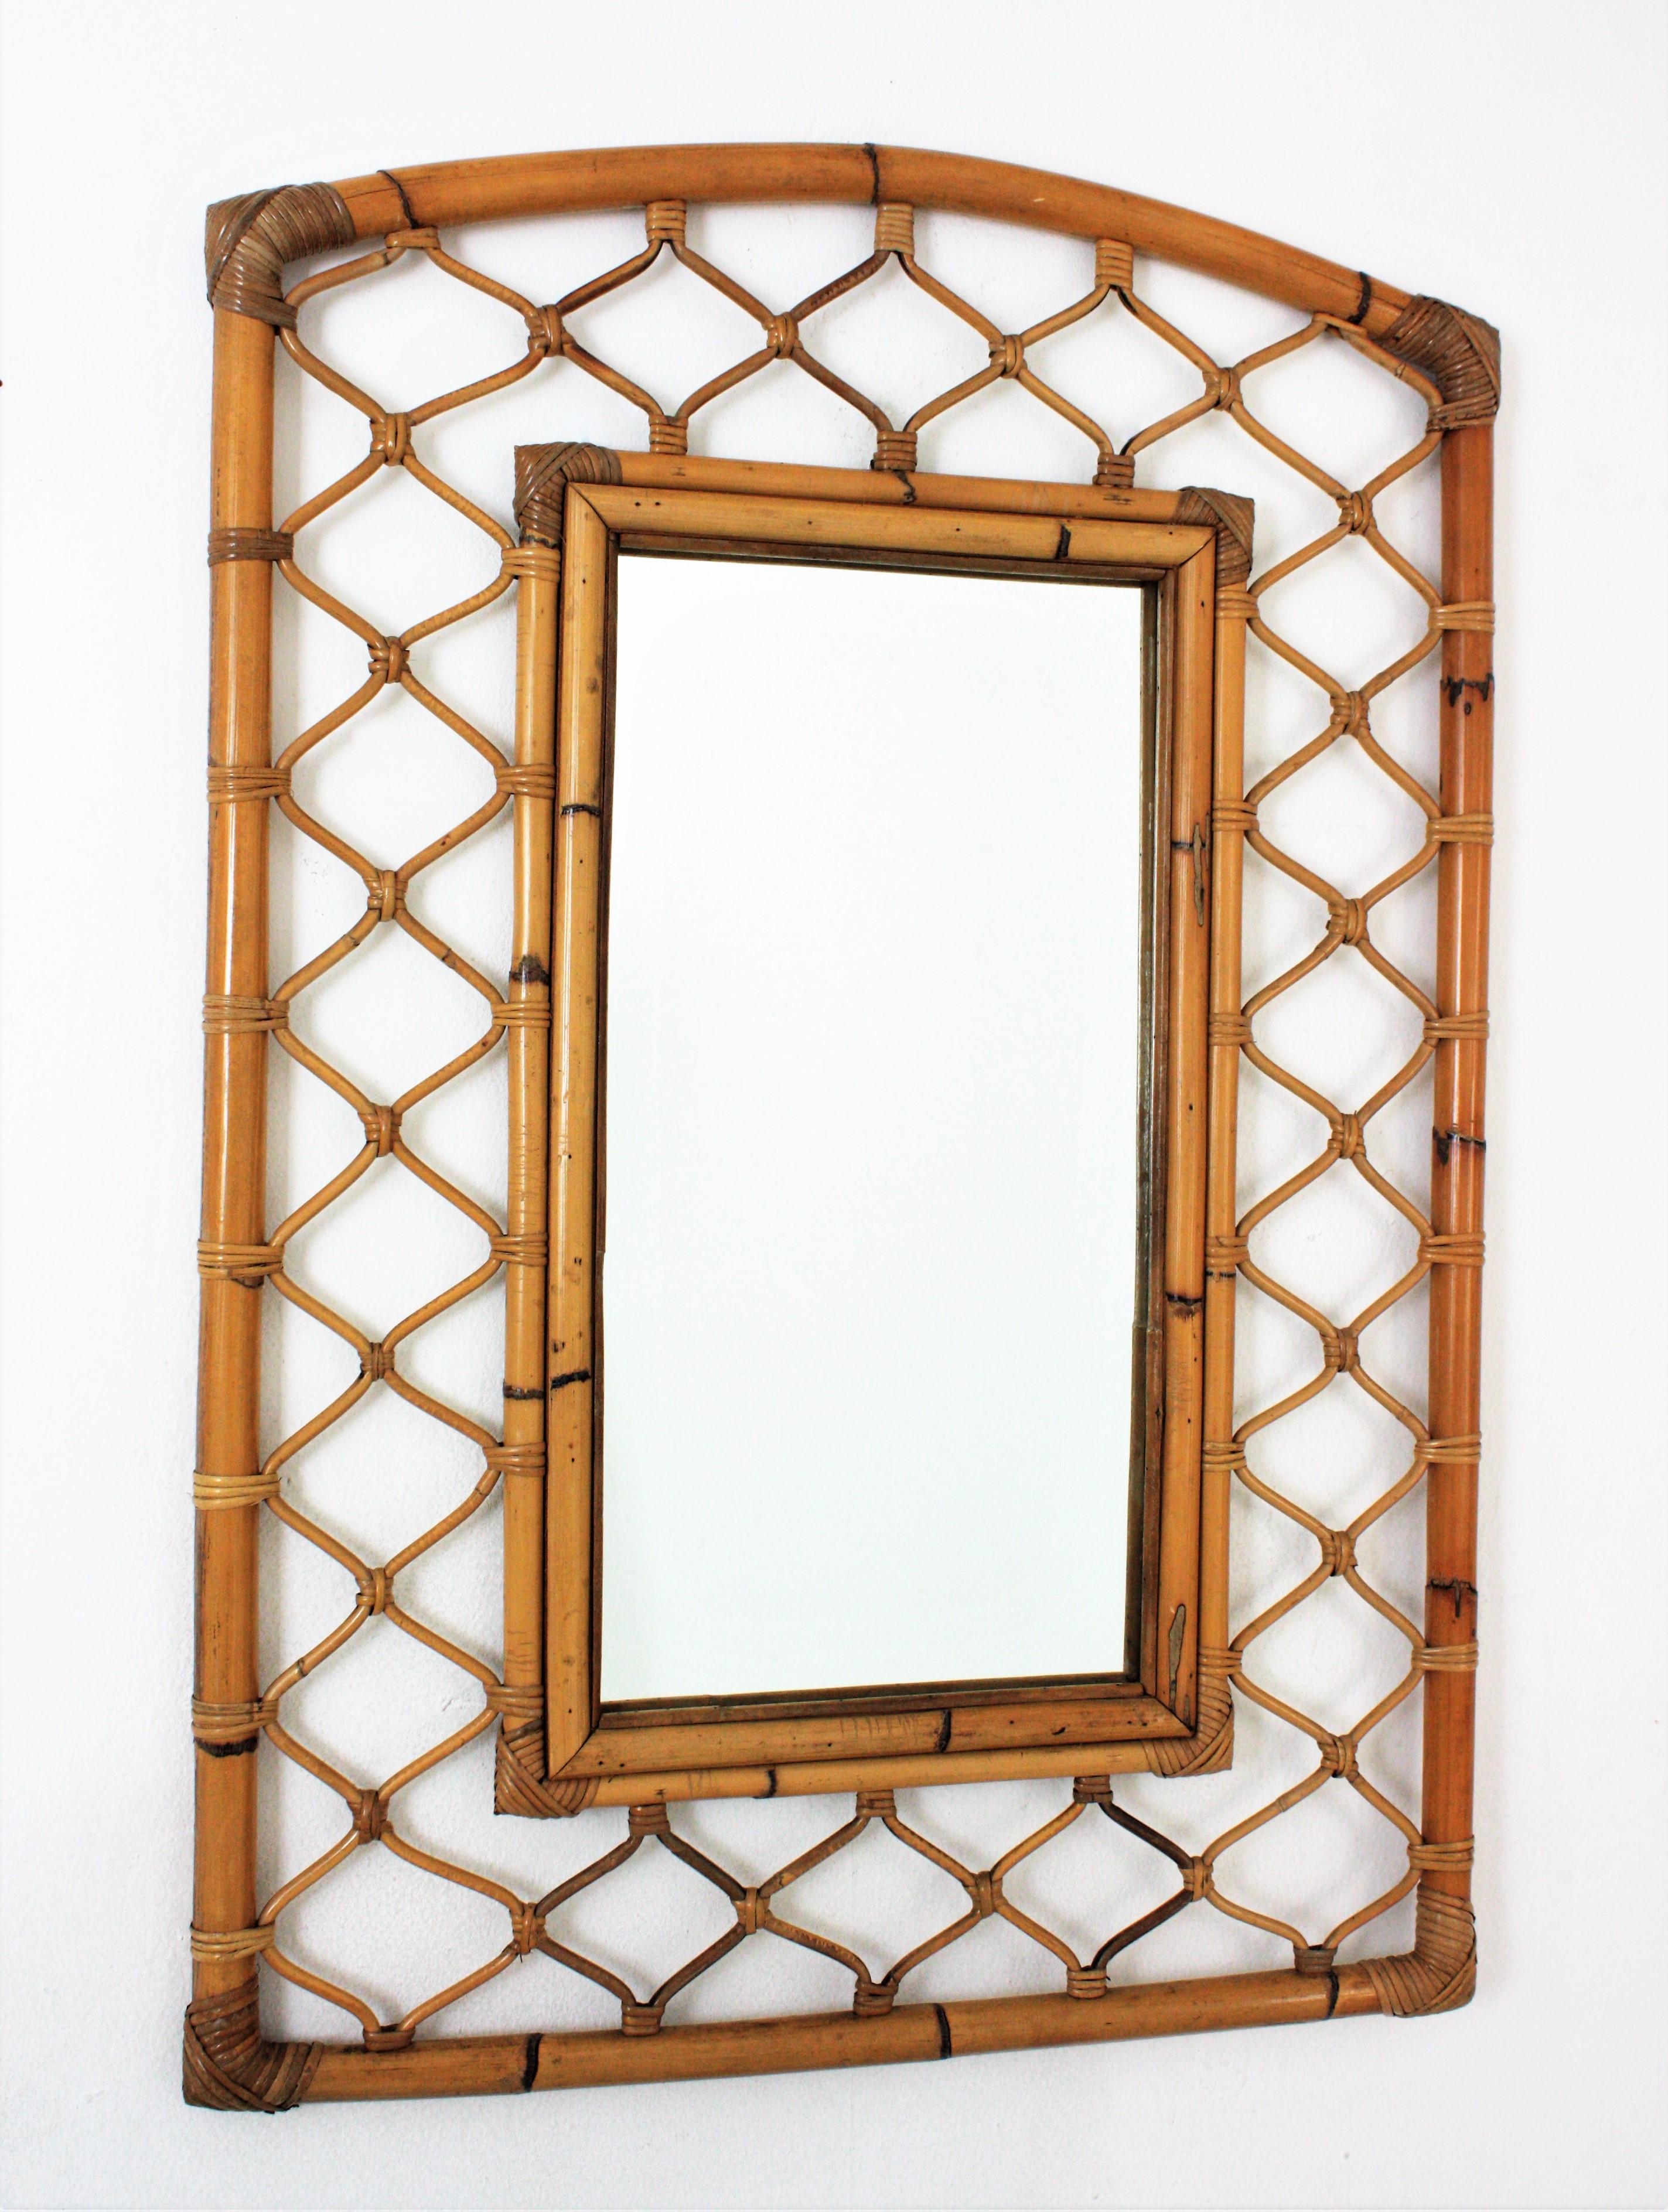 Auffälliger rechteckiger Spiegel aus der Mitte des Jahrhunderts mit Rattan-Bambusrahmen. Spanien, 1960er Jahre.
Dieser mediterrane Wandspiegel hat einen sehr dekorativen Rahmen, der aus zwei konzentrischen, rechteckigen Bambusrahmen besteht,